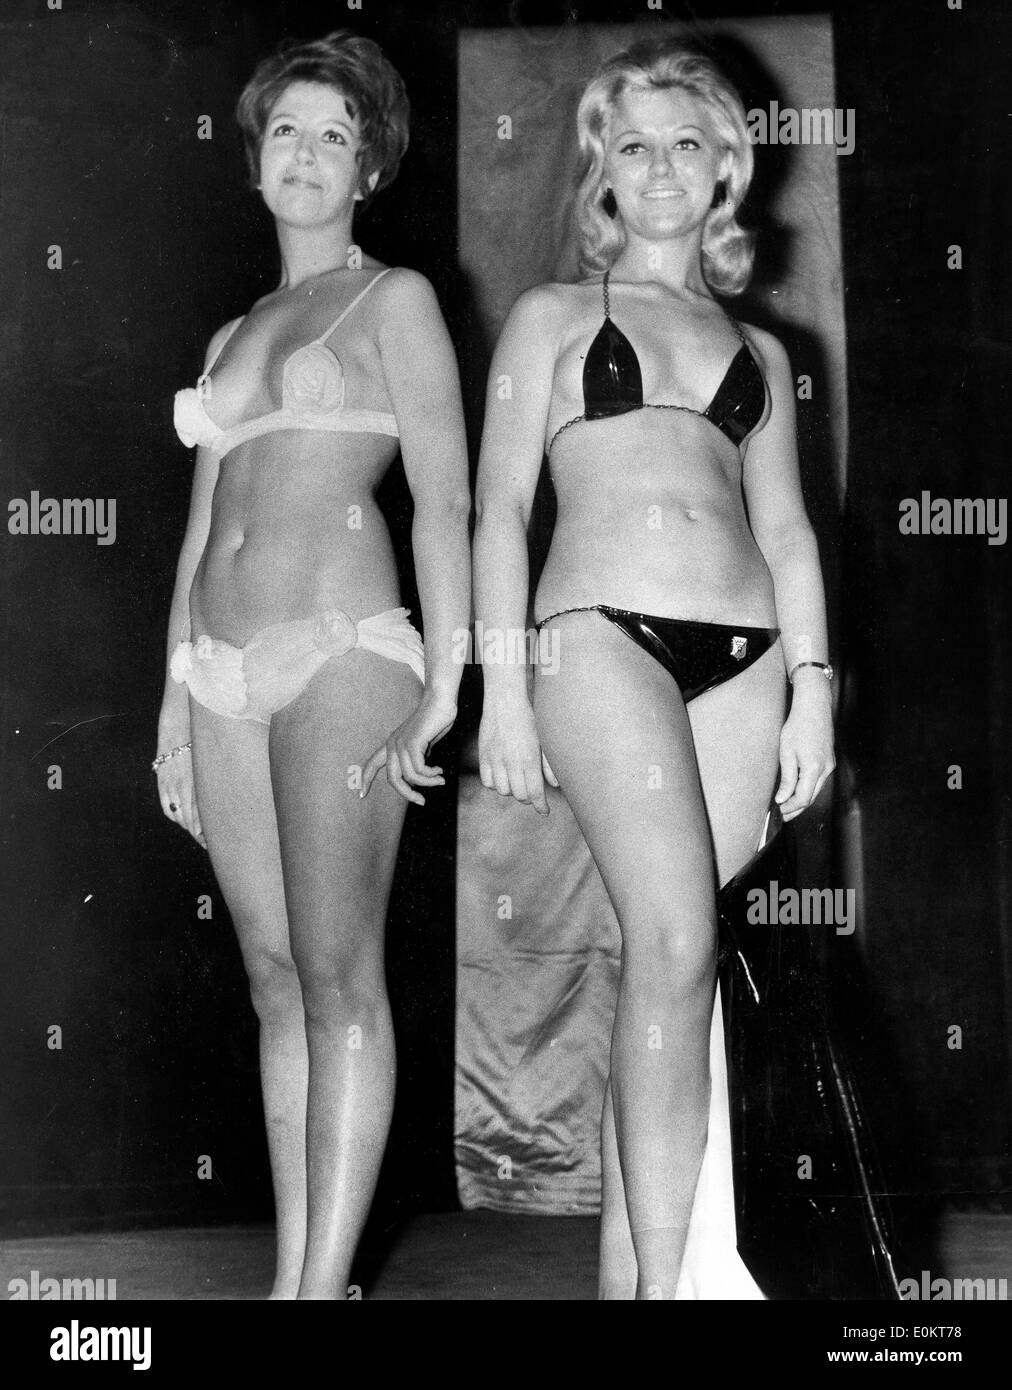 Enero 01, 1950 - Foto de archivo: circa 1940S-1950s, ubicación desconocida. Las niñas posando en bikini en desfiles de moda, los retoños y playas de bronceado. Según la versión oficial, el moderno bikini fue inventado por el ingeniero francés Louis Rekard y el diseñador de moda Jacques Heim en París en 1946 y presentó el 5 de julio, en un desfile de modas en la Piscine Molitor en París. Era una cadena con un bikini tanga volver Foto de stock